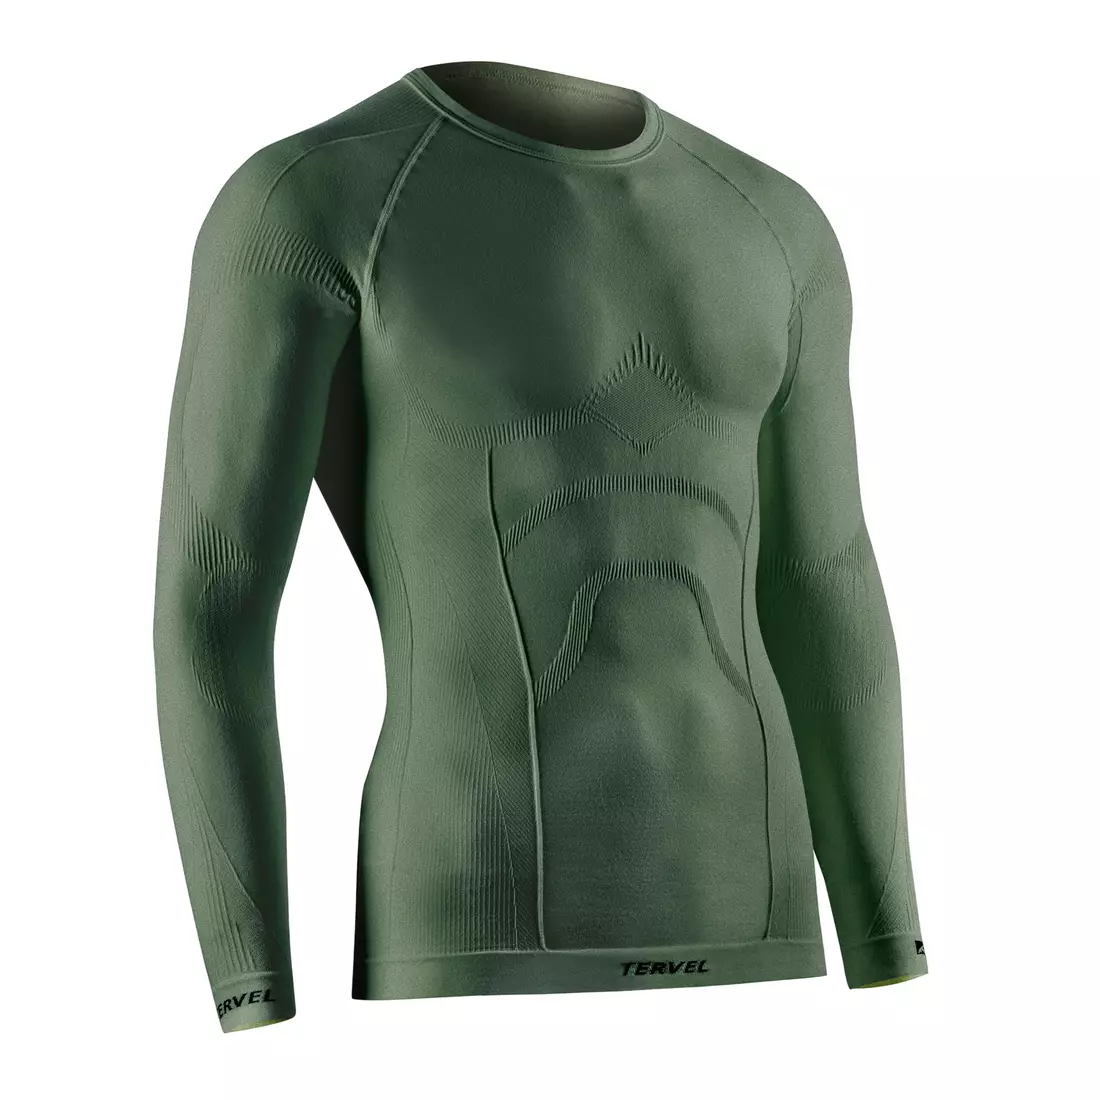 TERVEL COMFORTLINE 1002 - férfi termikus póló, hosszú ujjú, szín: Military (zöld)